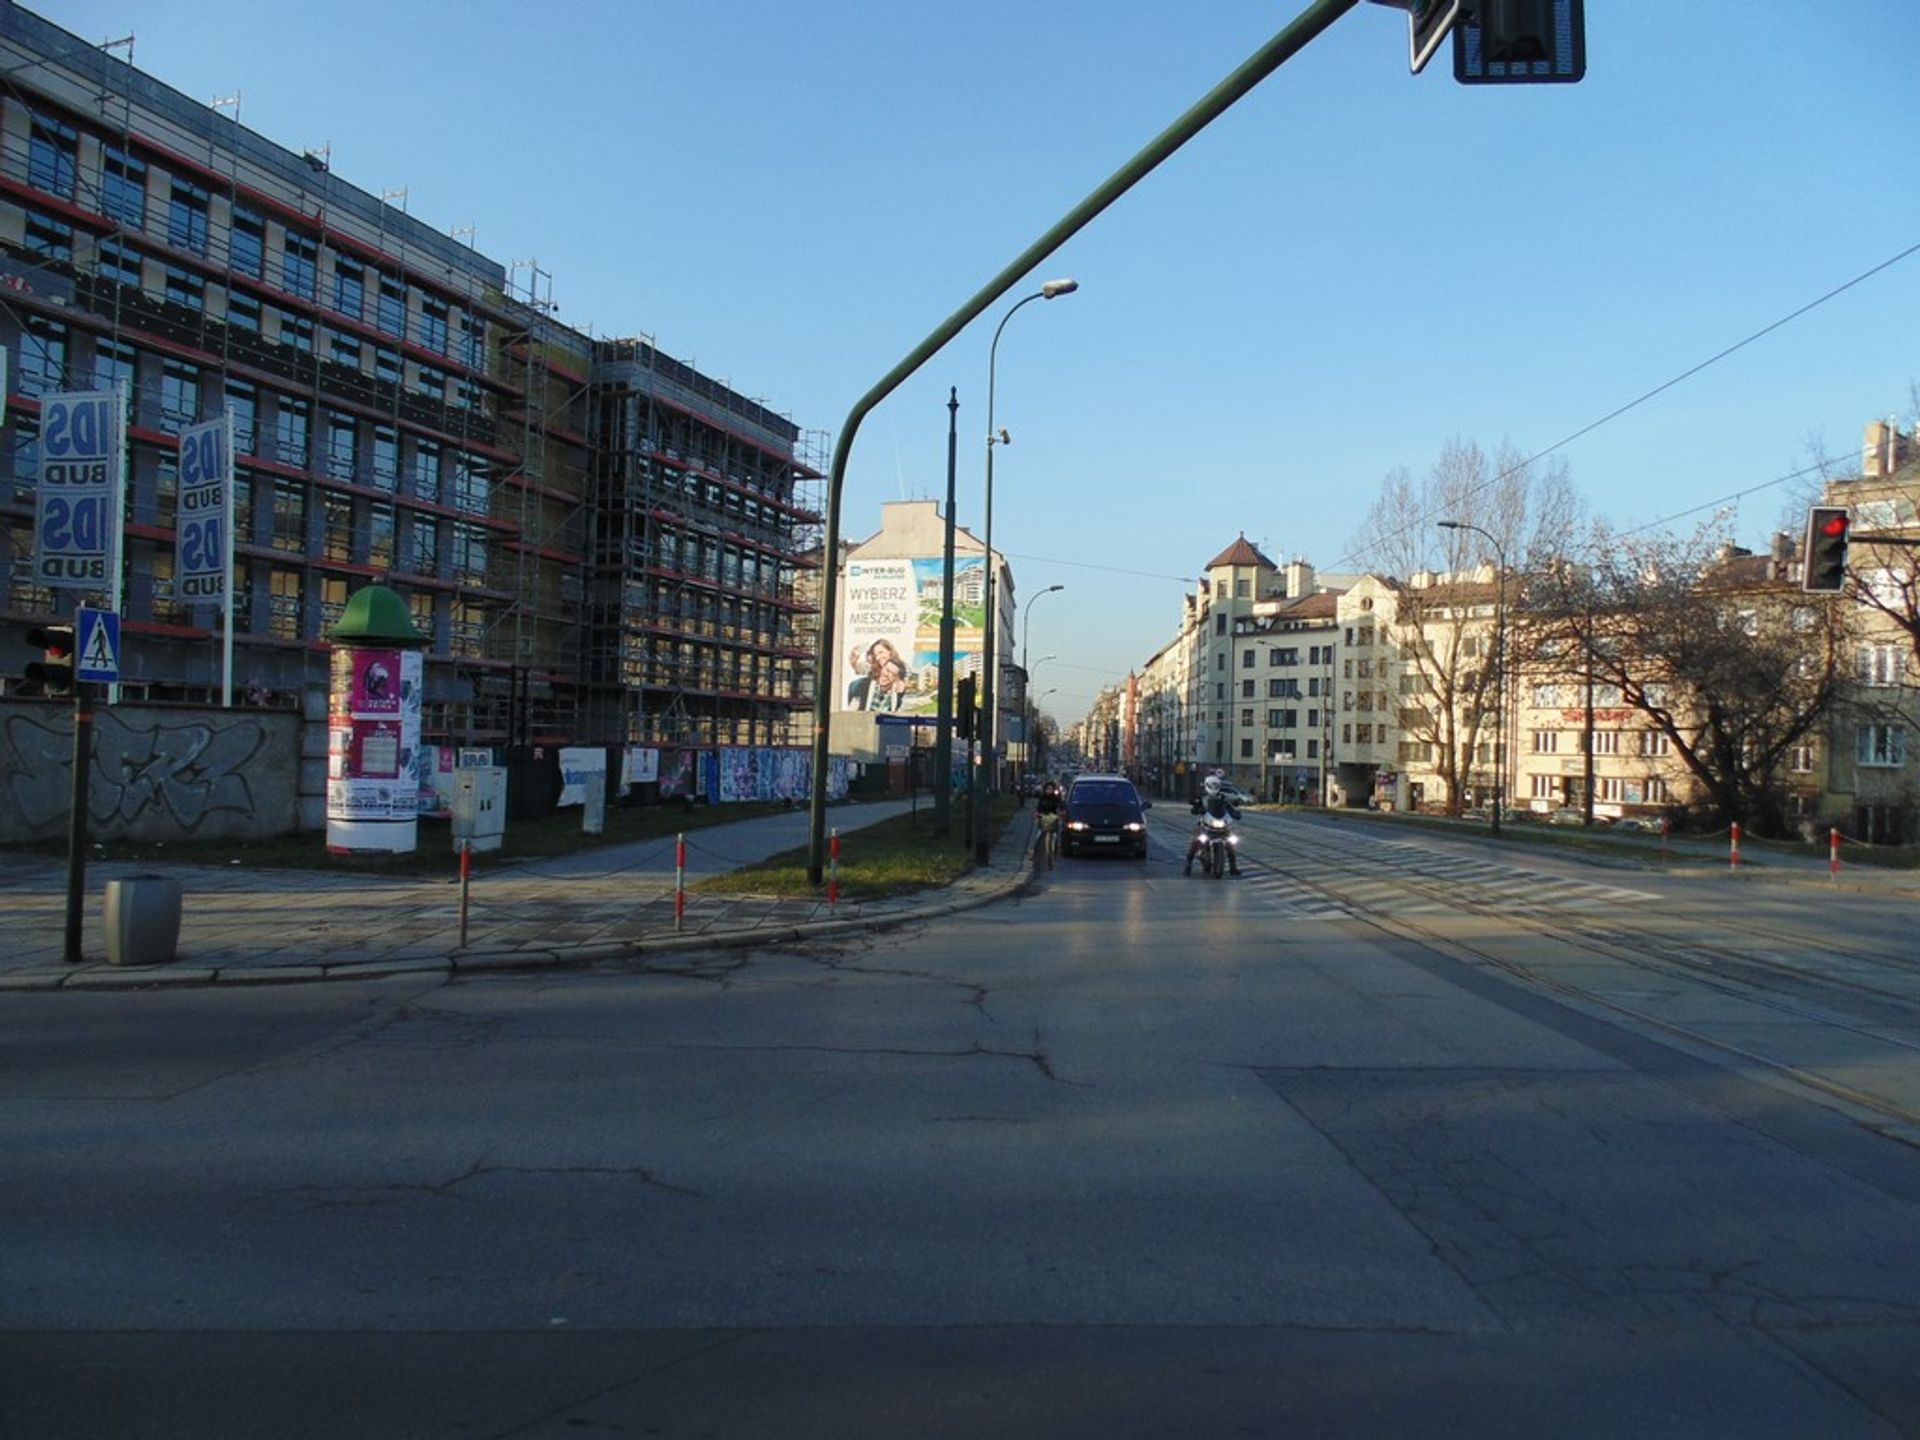  Planowana przebudowa ulicy Starowiślnej wywołała obawy radnych